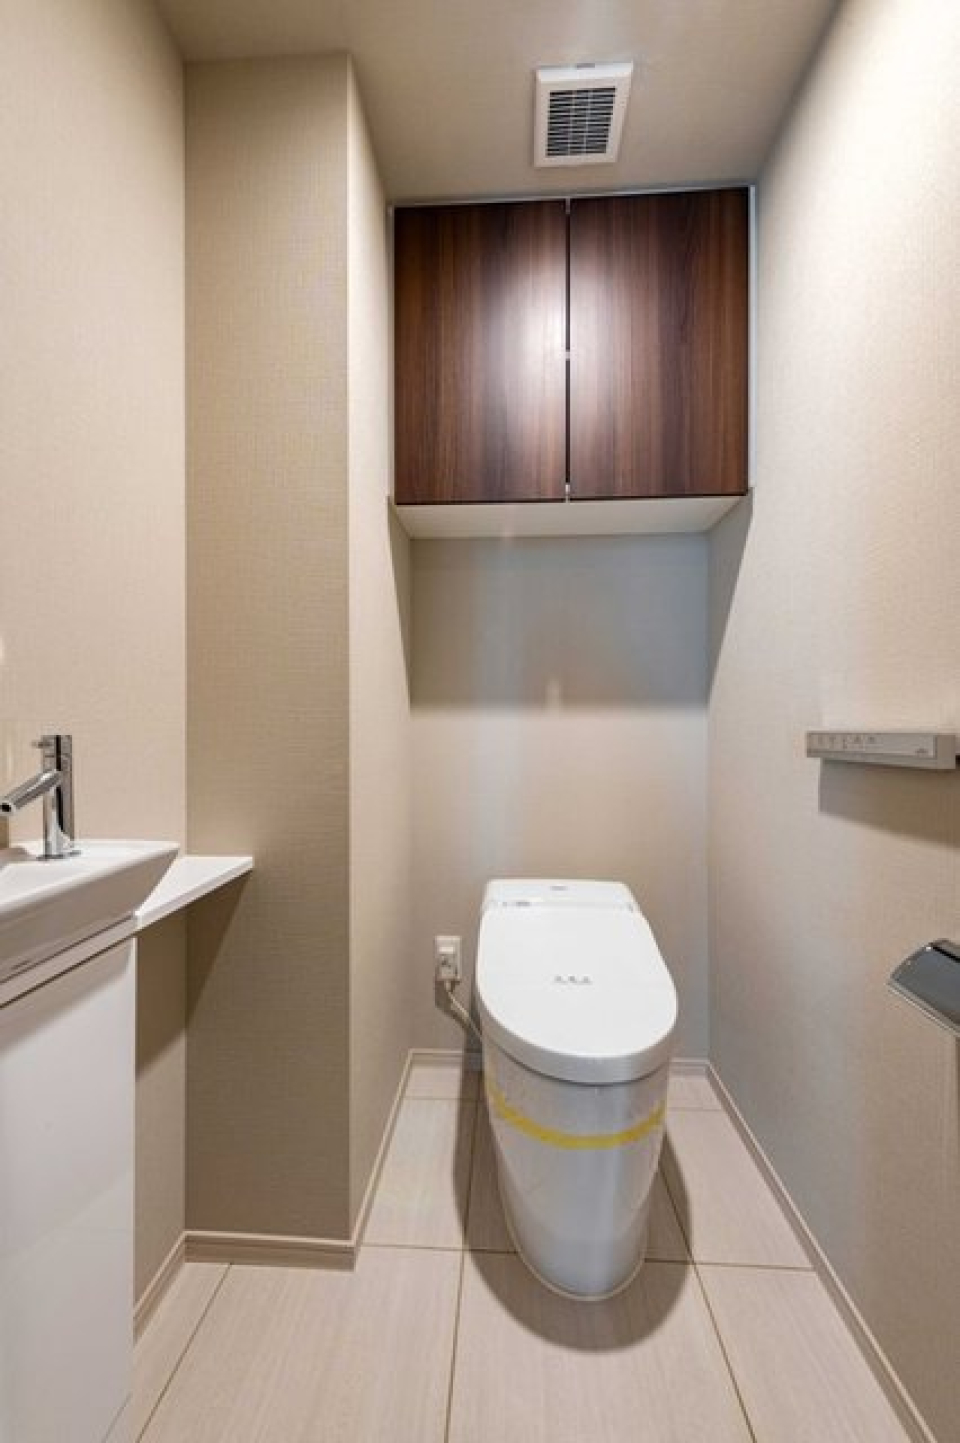 お手洗いは、ウォシュレット付きのトイレとなっております。室内に洗面台もあり、広々とした空間となっています。
※写真は同タイプ住戸です。